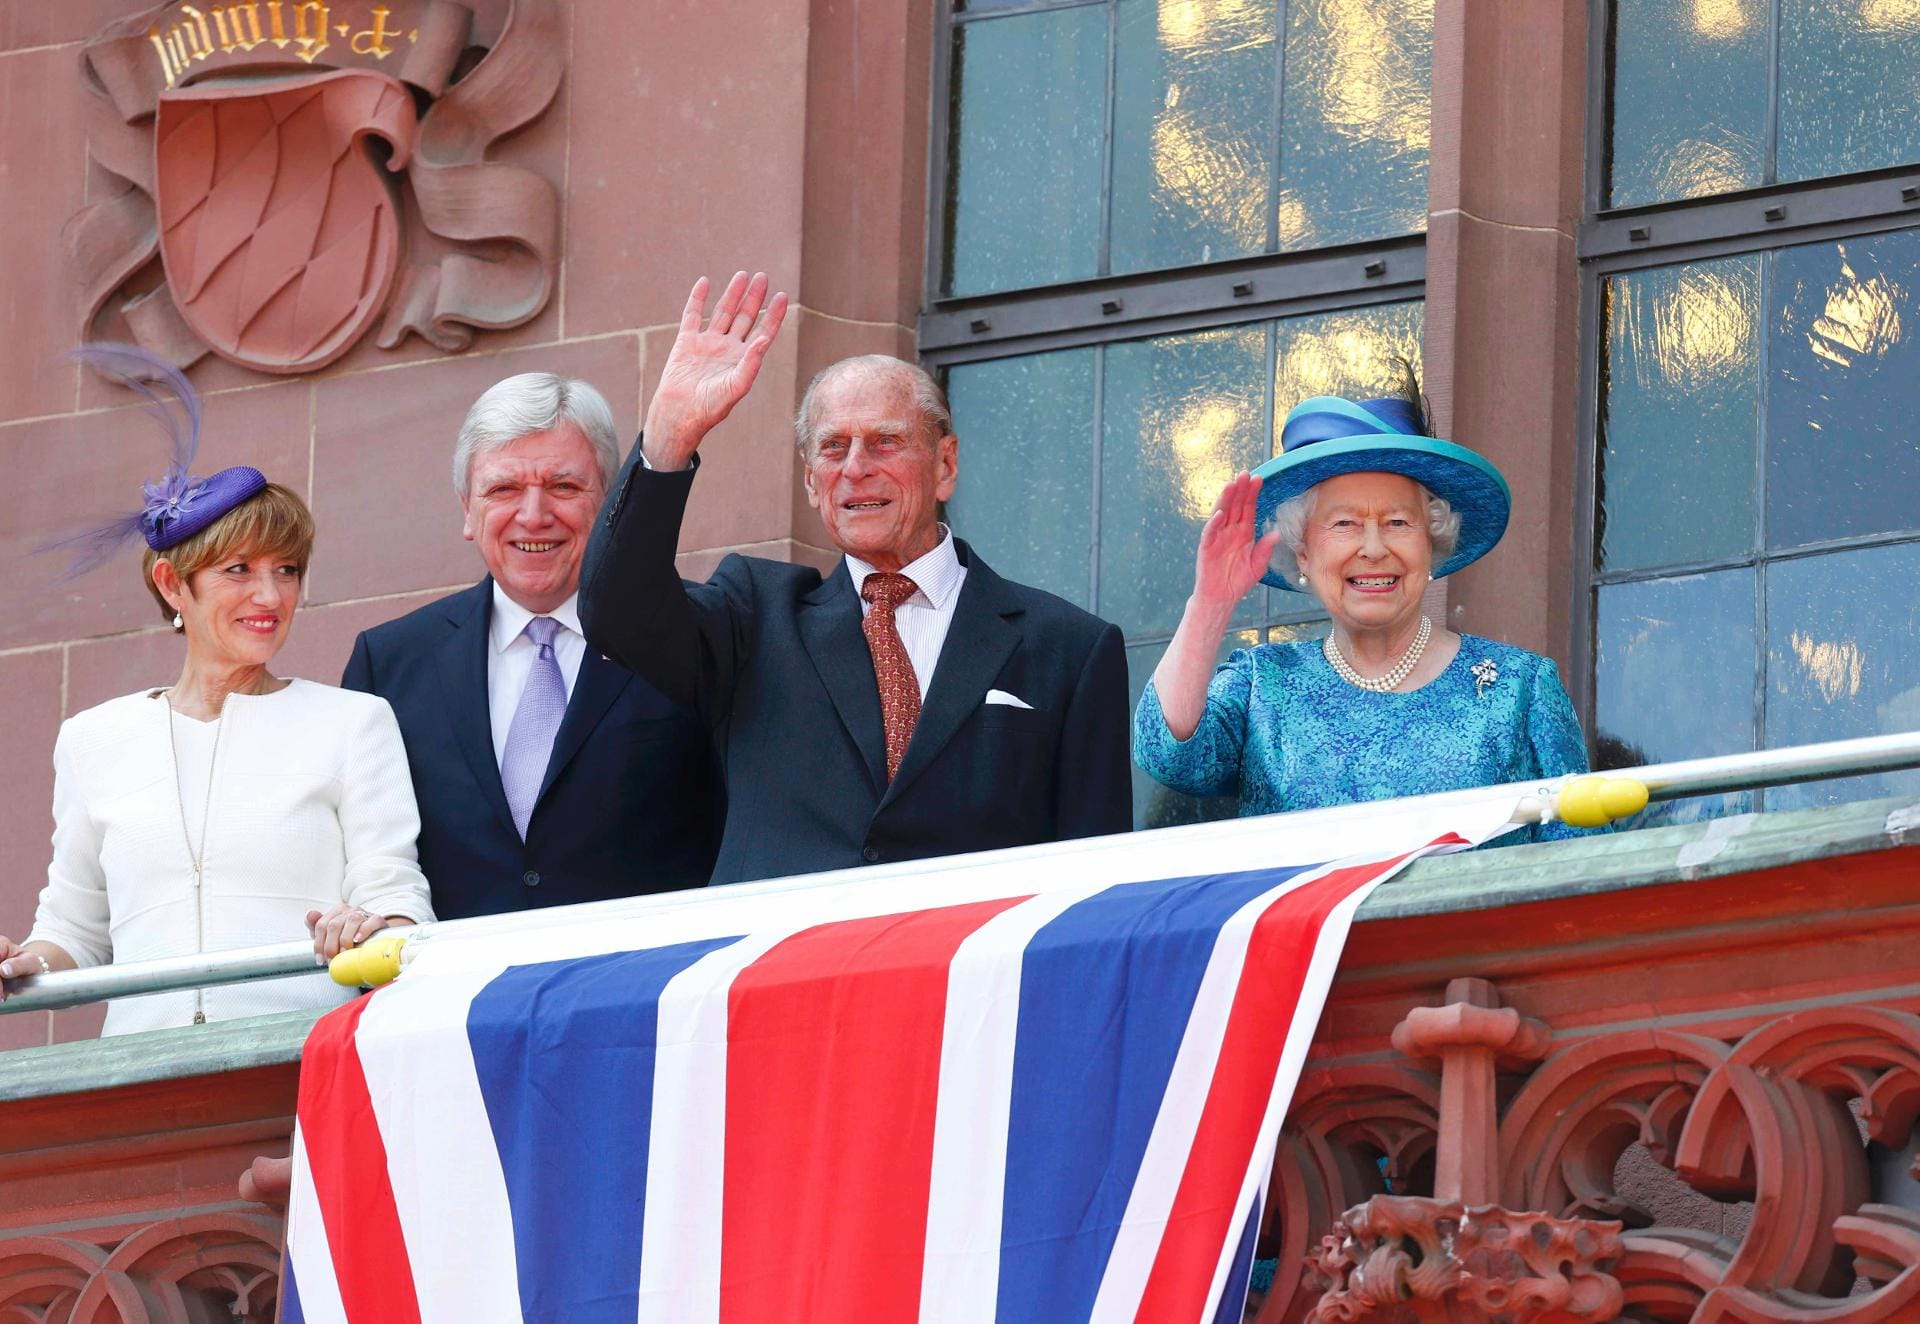 Donnerstag, 14.45 Uhr: Auf dem Balkon des Frankfurter Römers winken die Queen und ihr Gatte den Menschenmassen zu. Links neben den beiden sind der hessische Ministerpräsident Volker Bouffier und seine Frau Ursula zu sehen.